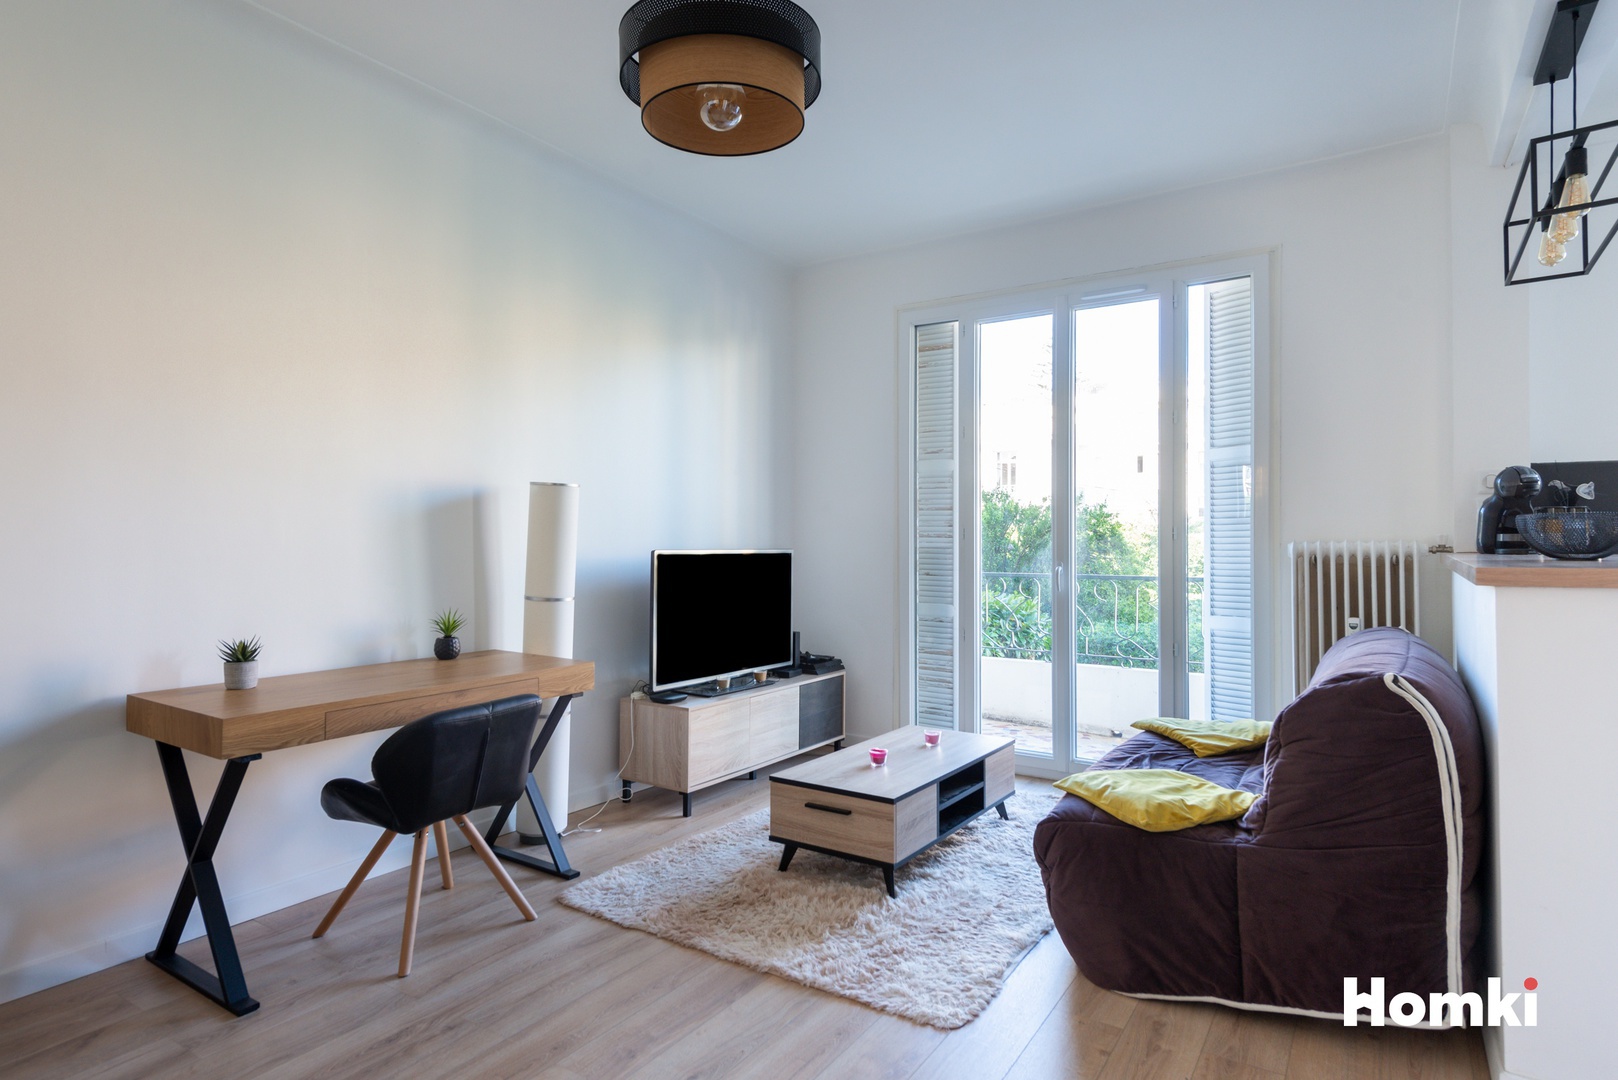 Homki - Vente Appartement  de 35.0 m² à Nice 06200